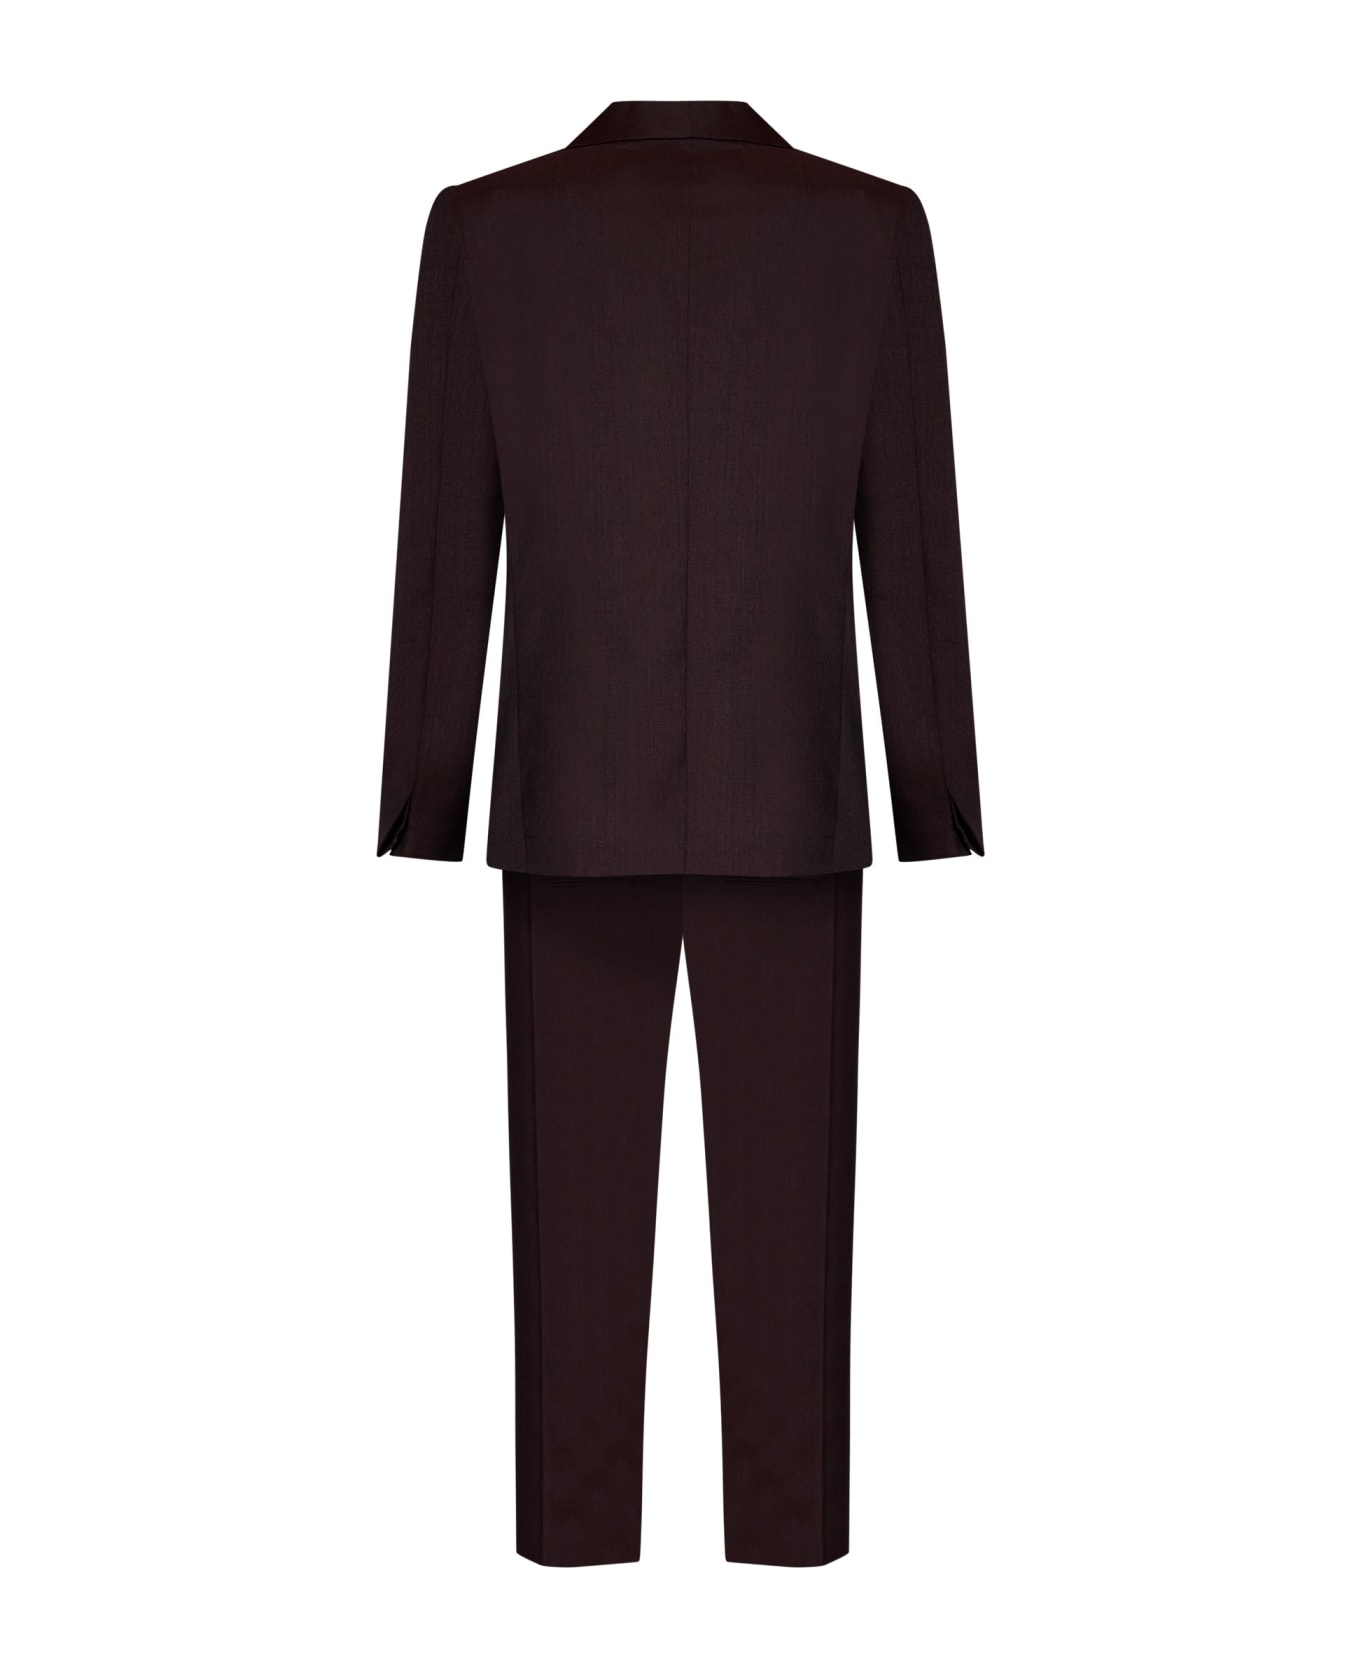 Low Brand 1b Evening Suit - Bordeaux スーツ